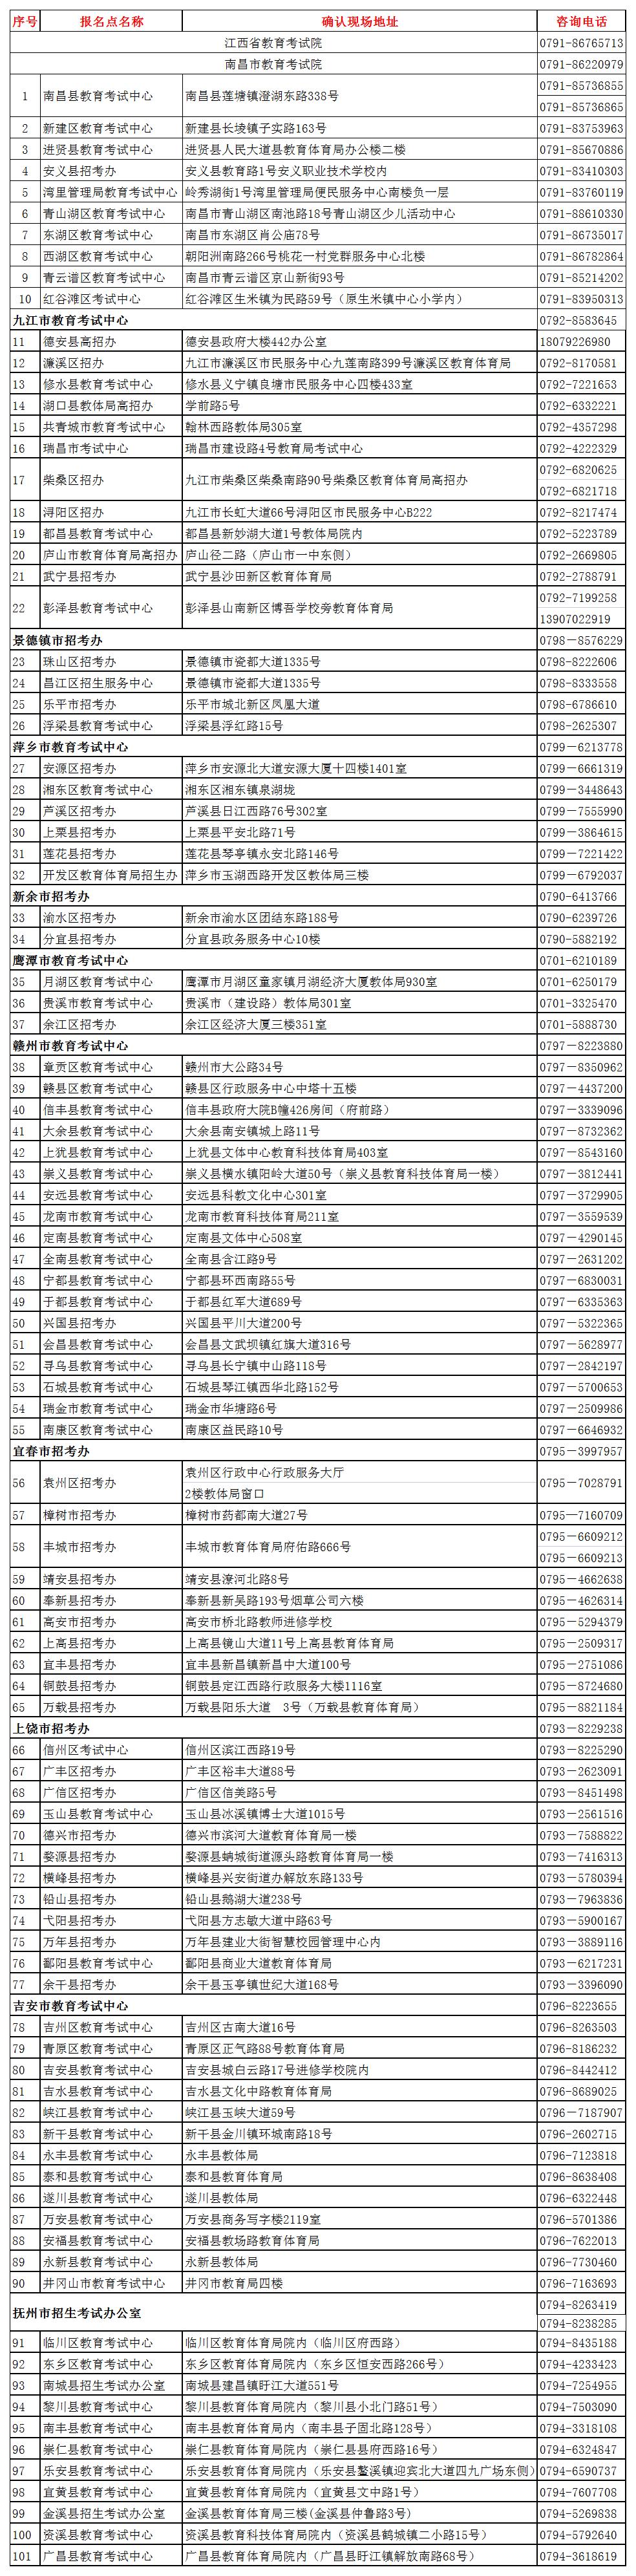 江西省2021年成人高考报名确认点地址.jpg